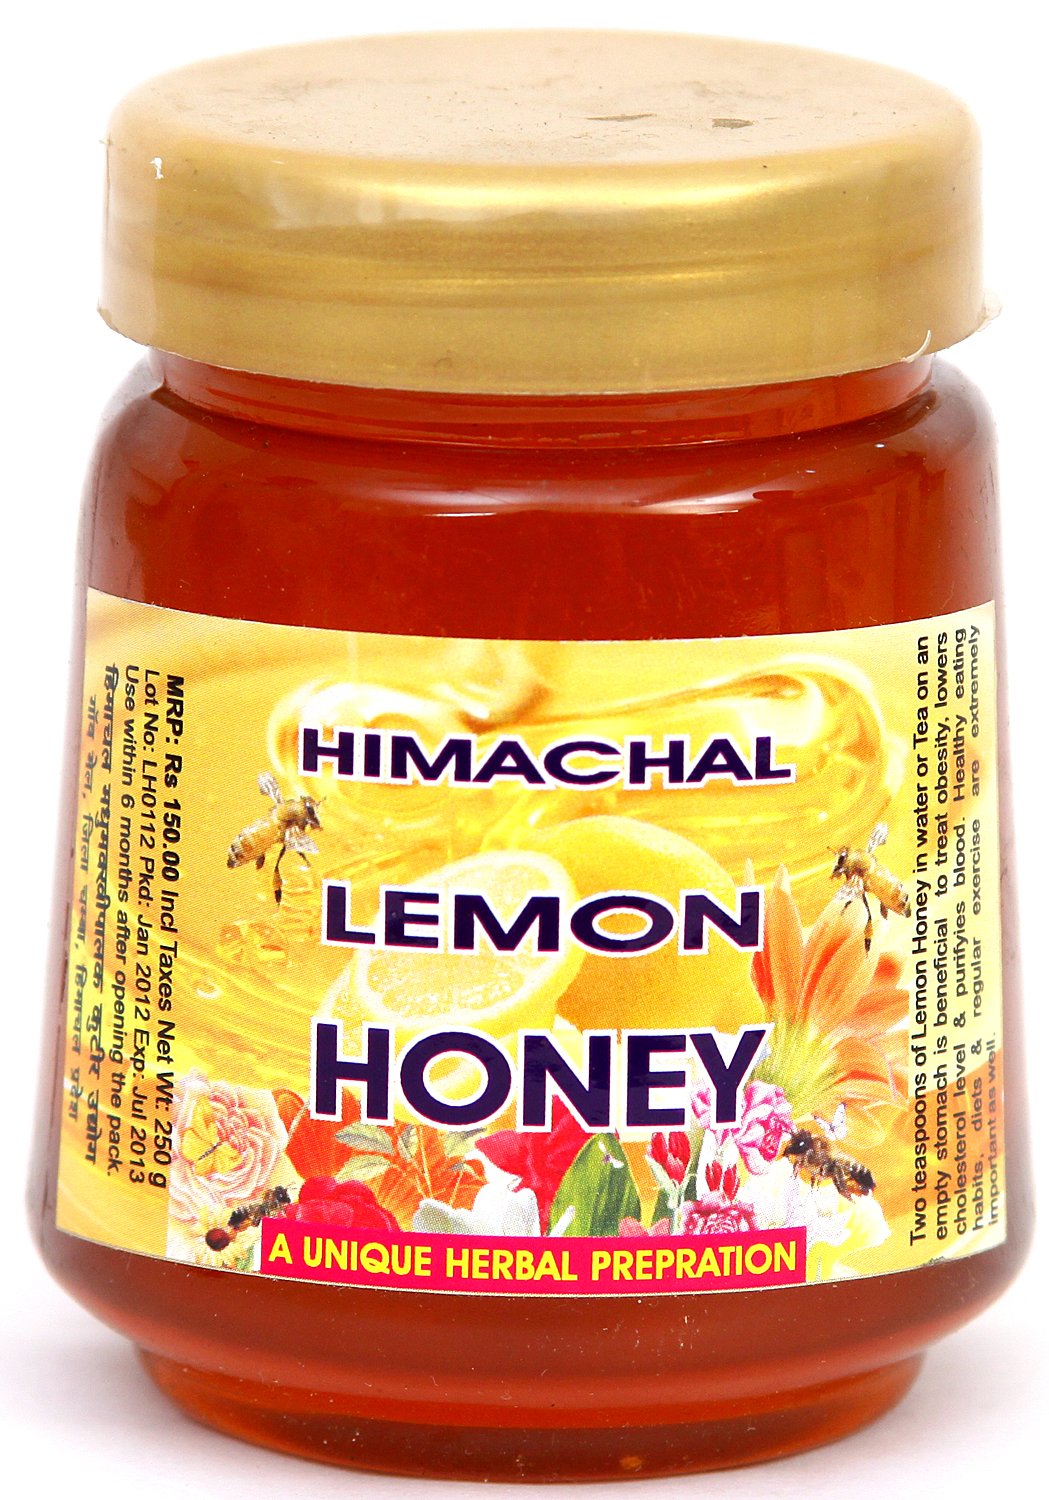 Lemon Honey - book cover